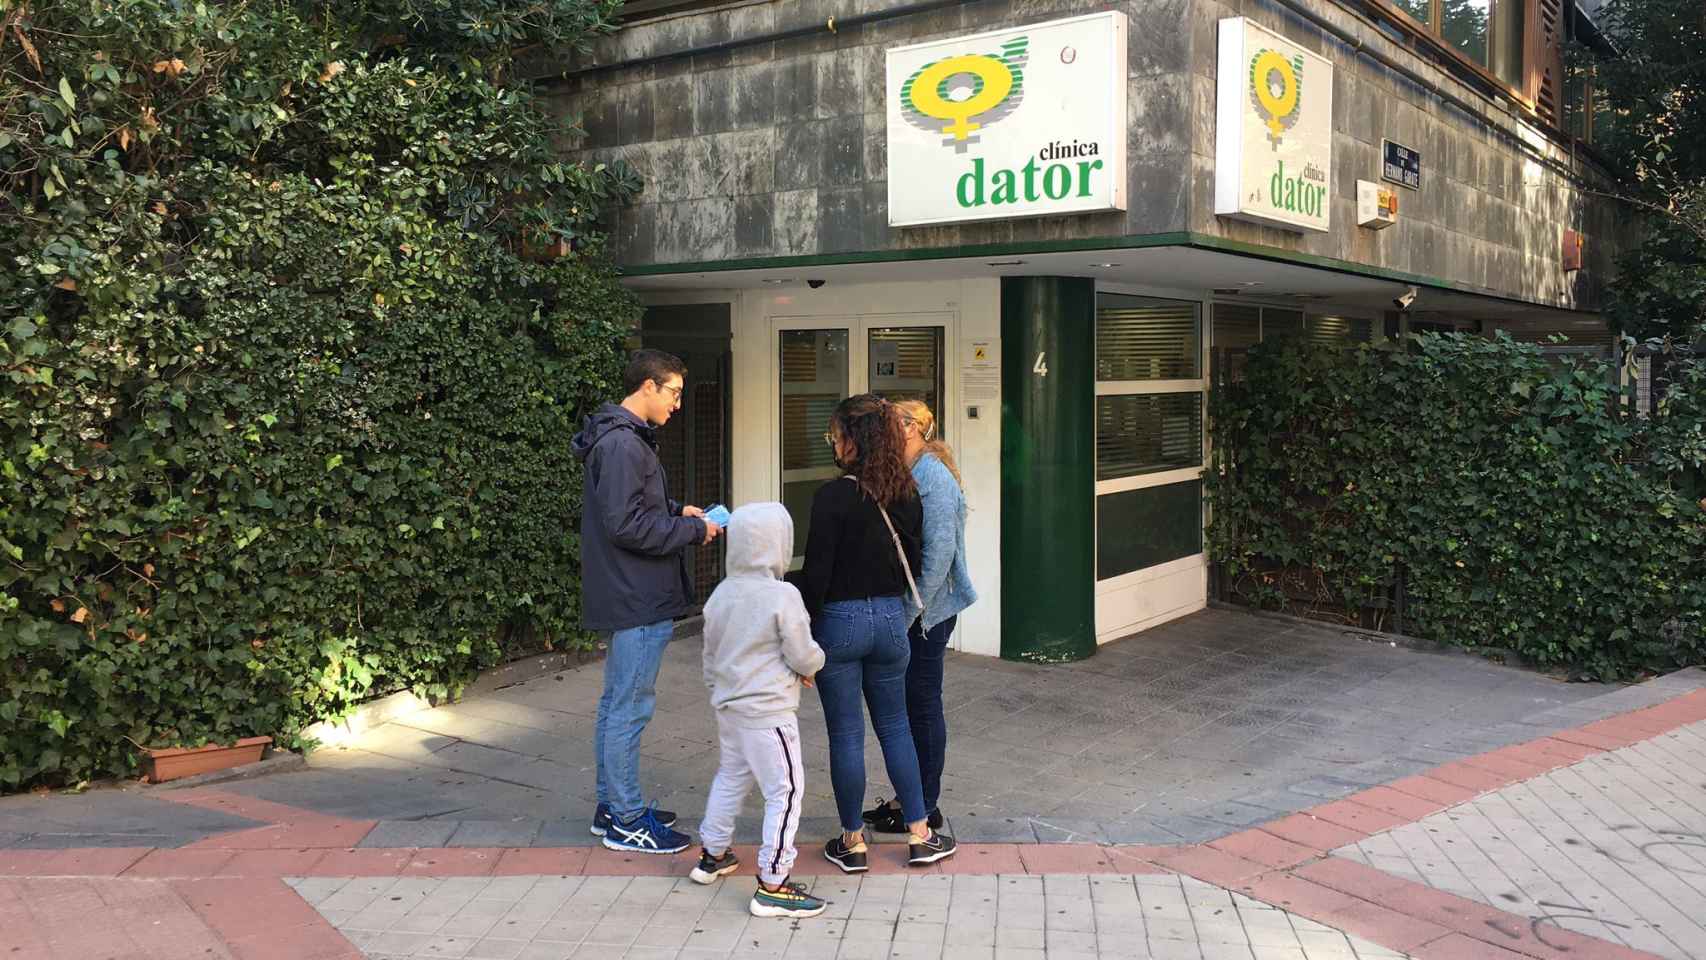 Bernardo junto a dos mujeres que pretenden entrar en la clínica Dator de Madrid.